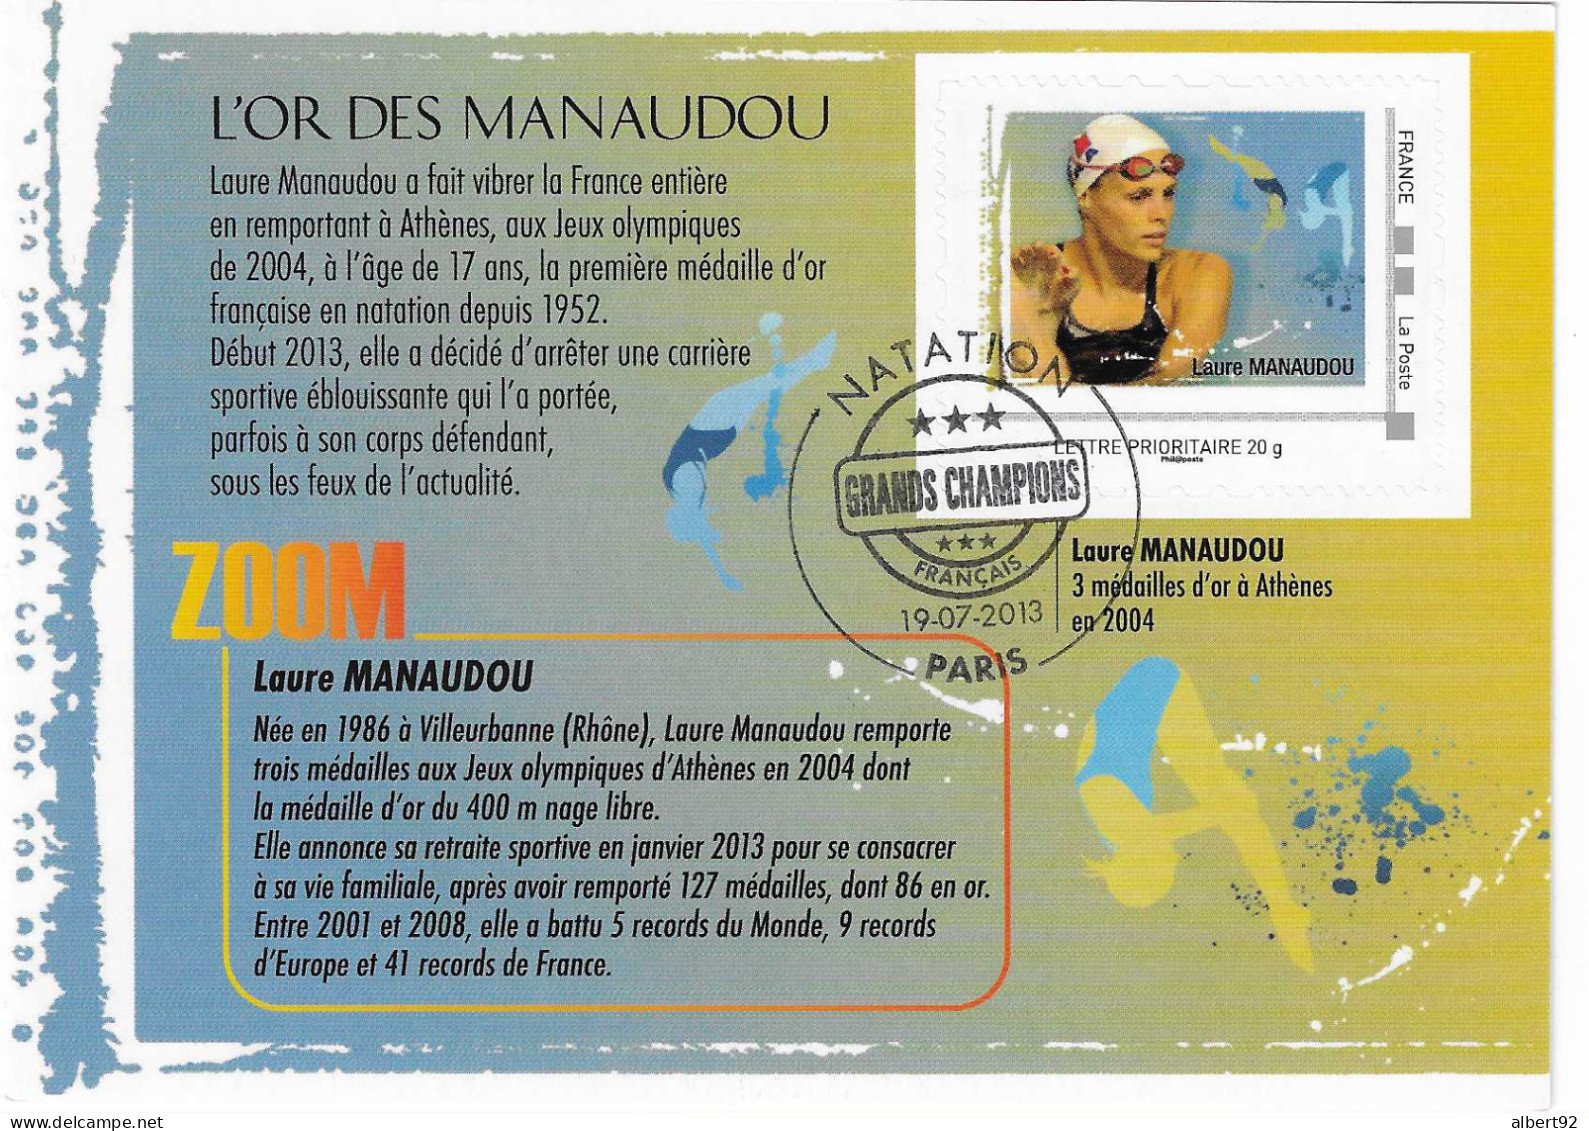 2013 Hommage à Laure Manaudou 3 Médailles D'Or En Natation Aux Jeux Olympiques D'Athènes 2004 - Sommer 2004: Athen